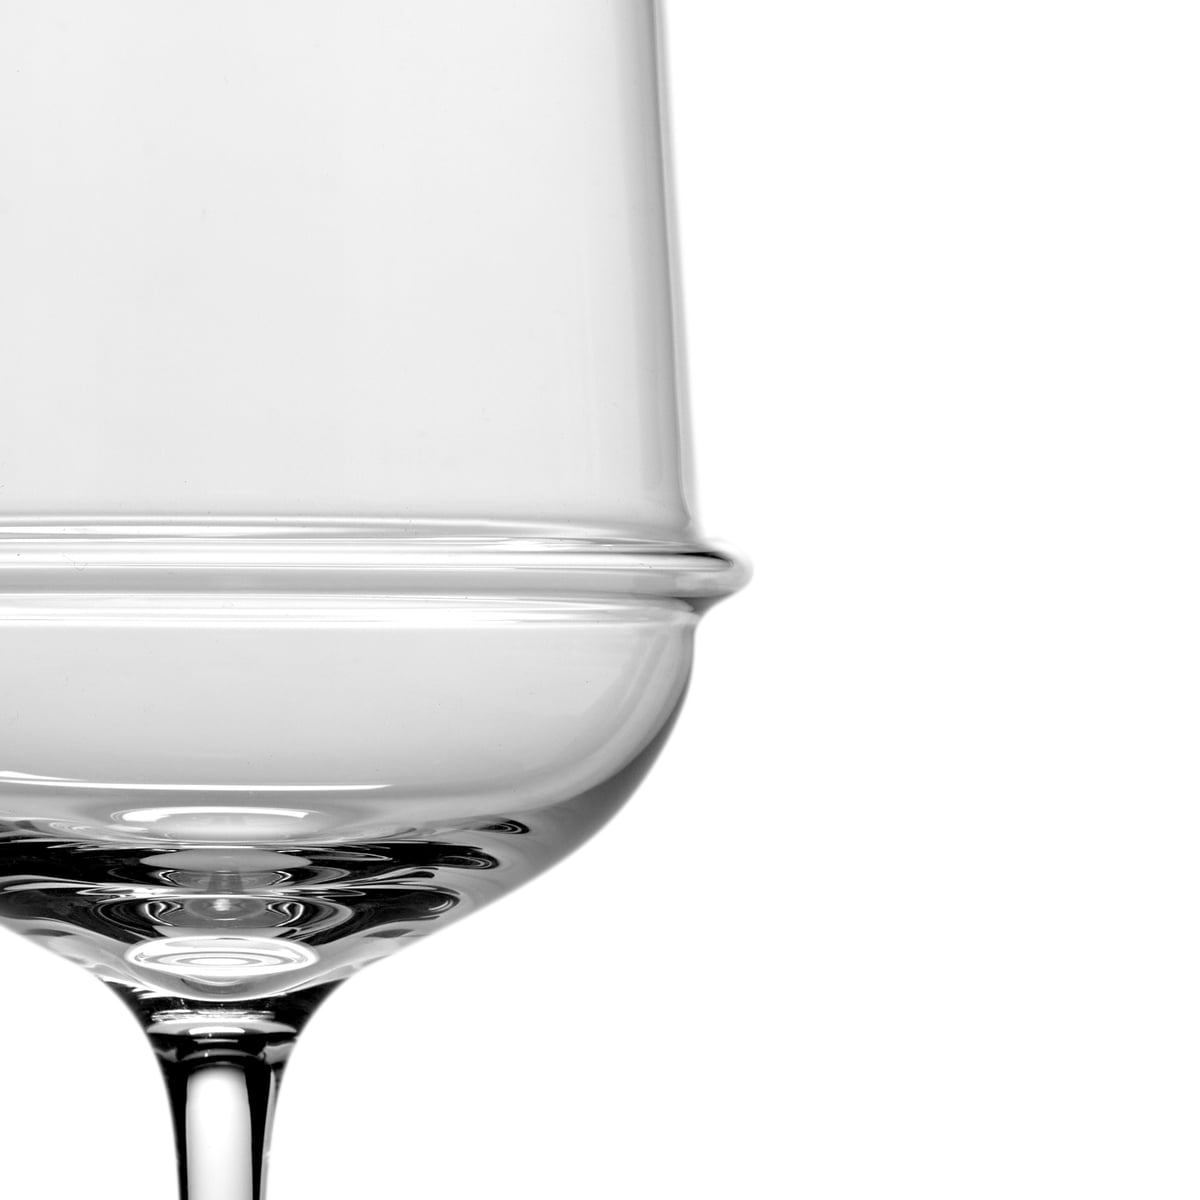 Surface White Wine Glasses, Serax